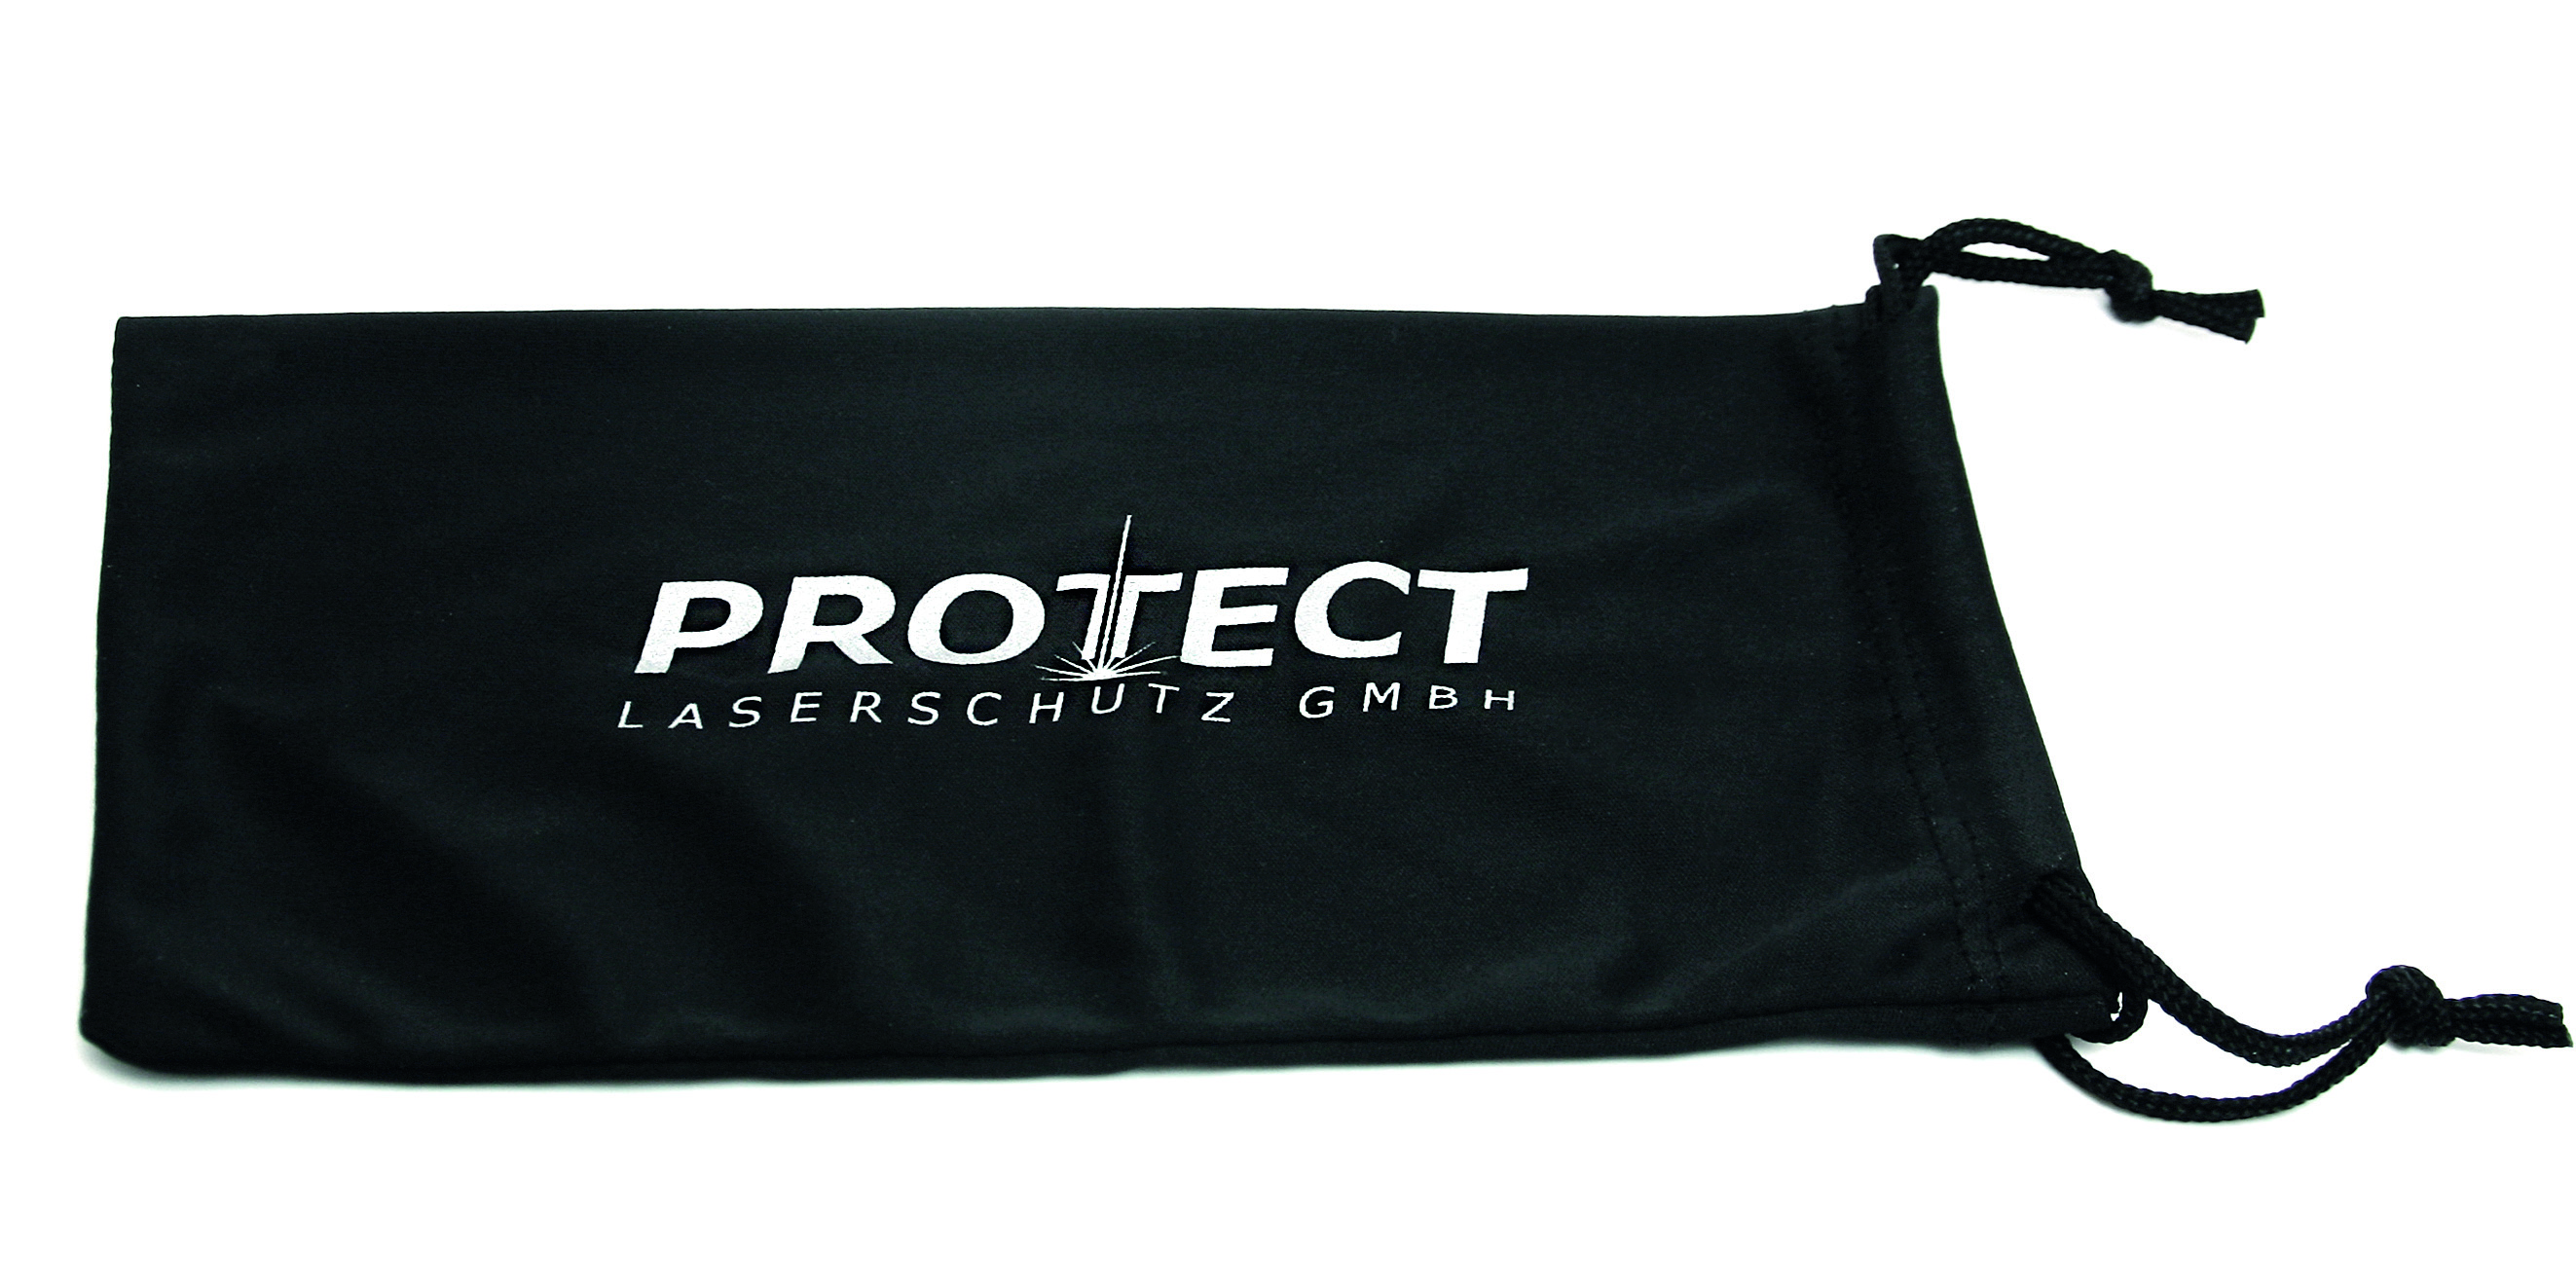 Mikrofaserbeutel mit PROTECT-Logo